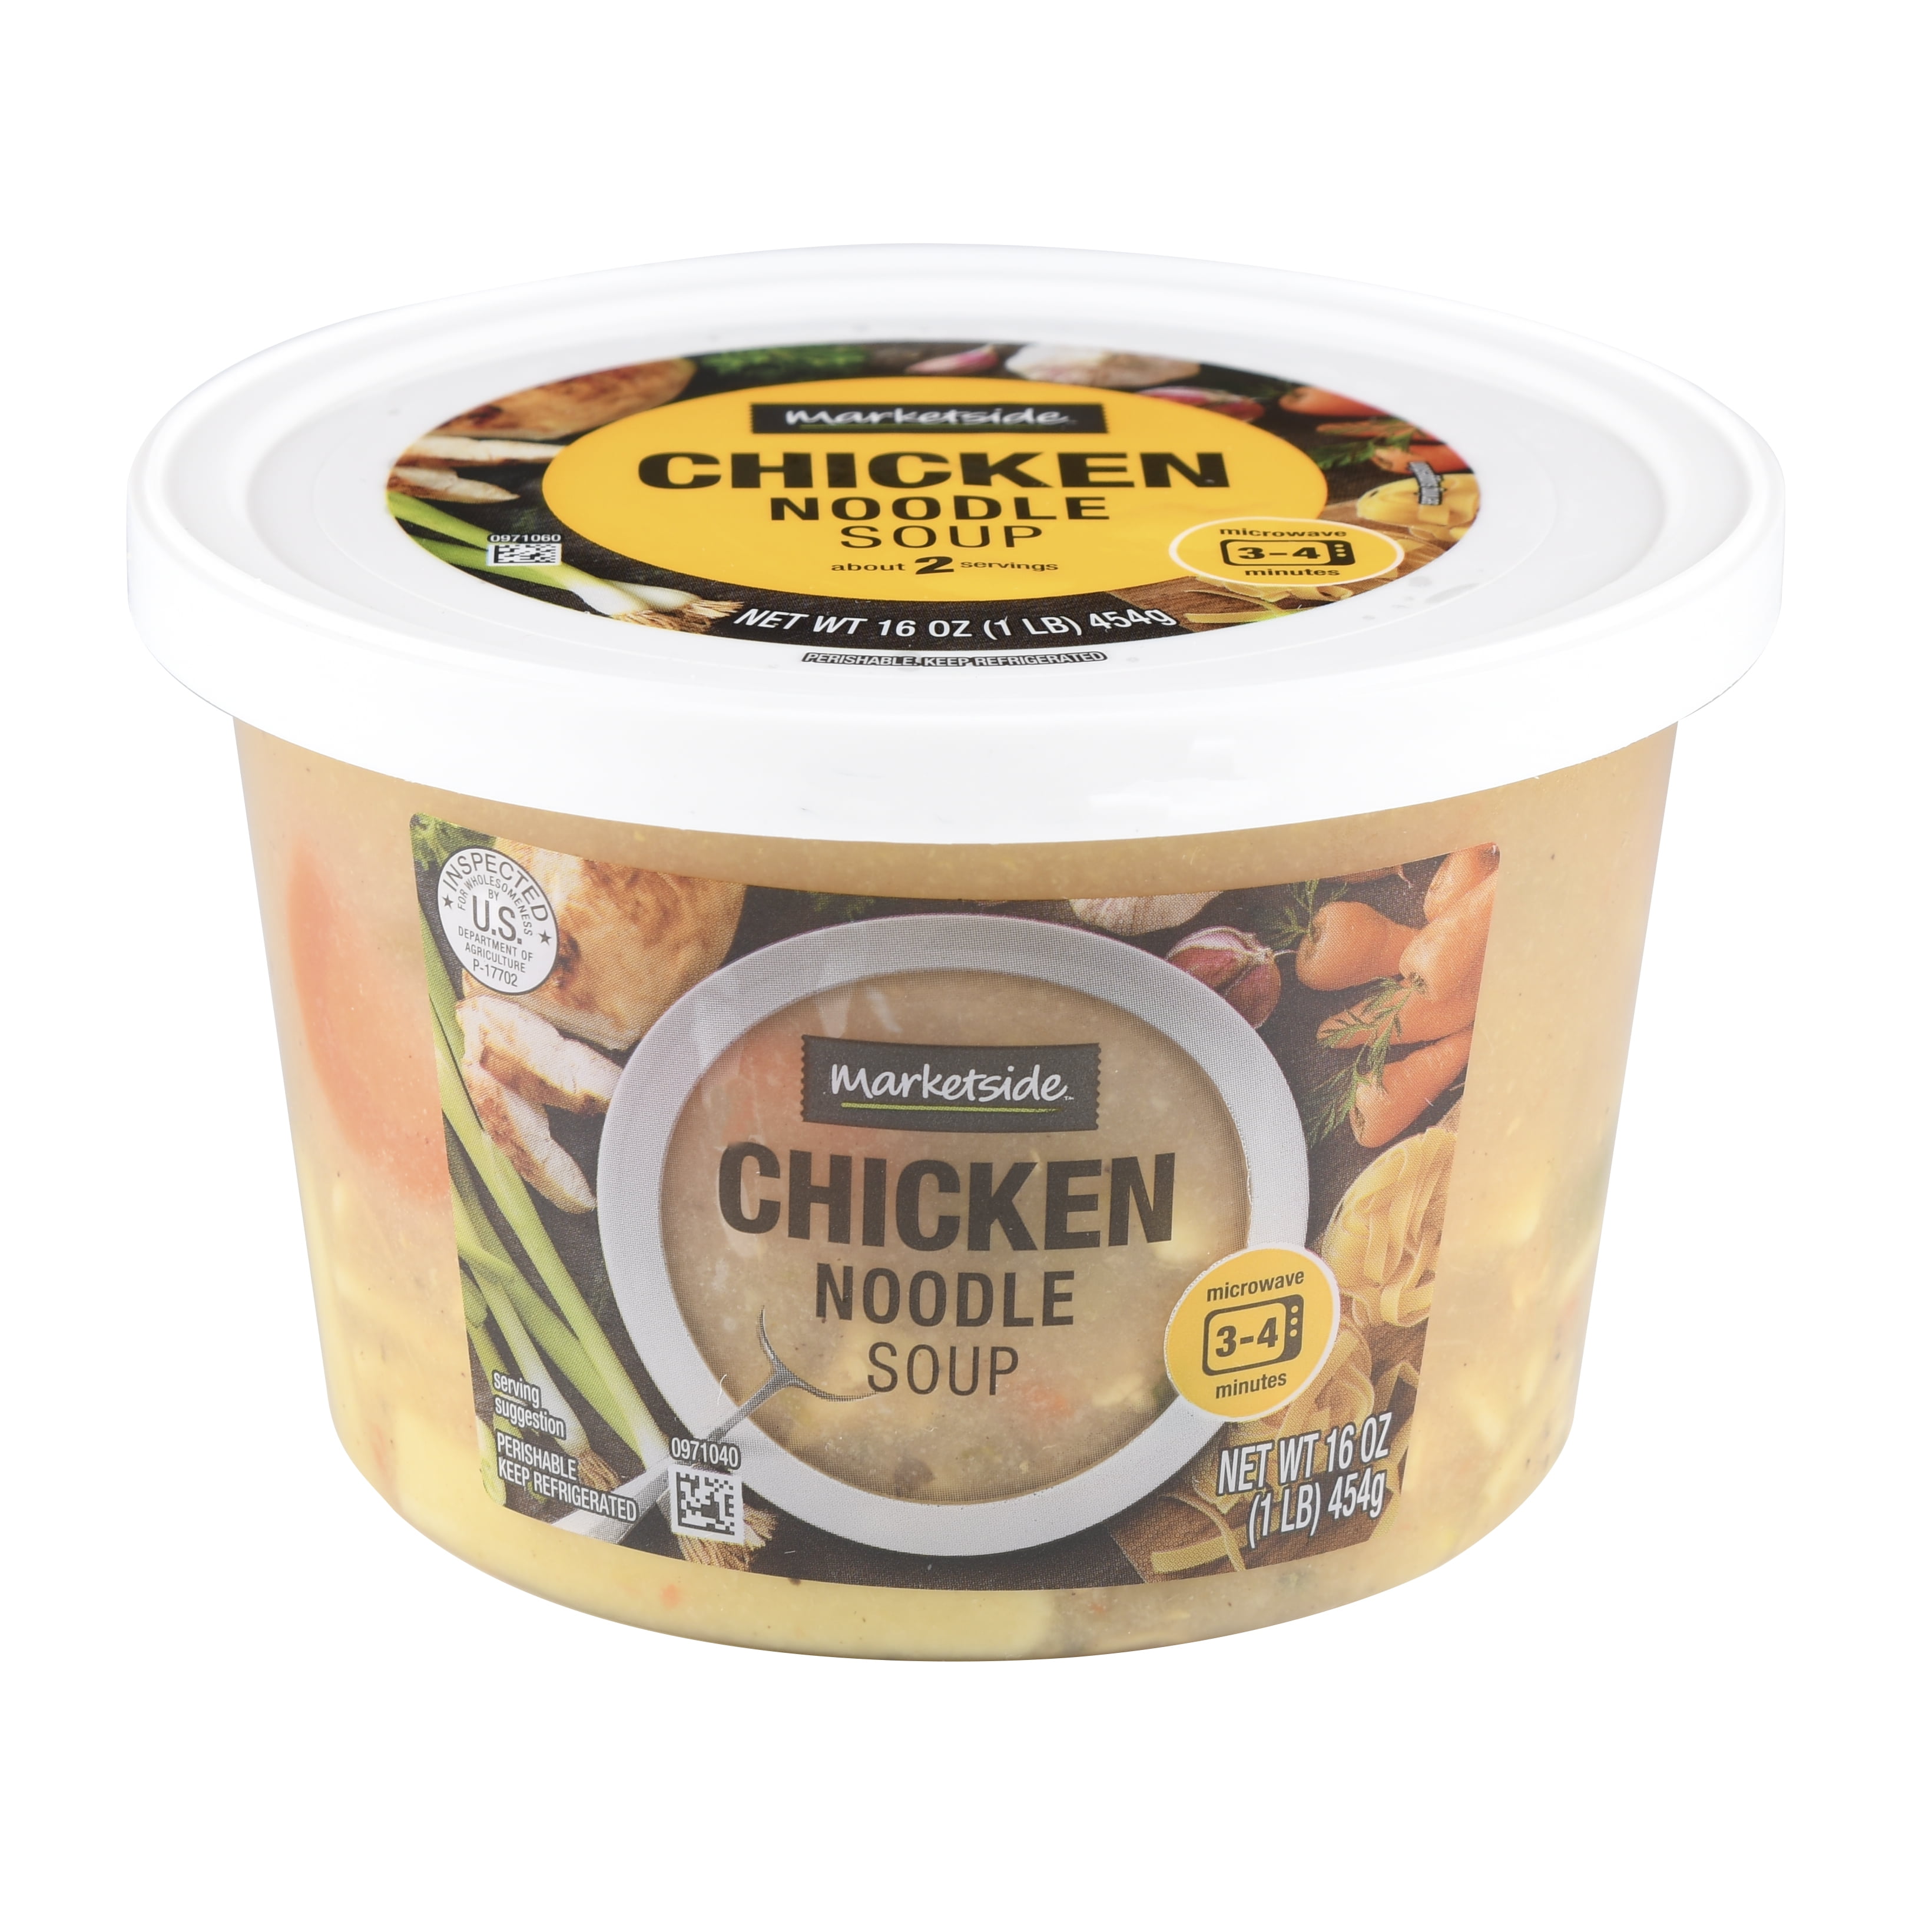 Marketside Chicken Noodle Soup - Fresh Deli Soup, 16 oz Cup - Walmart.com